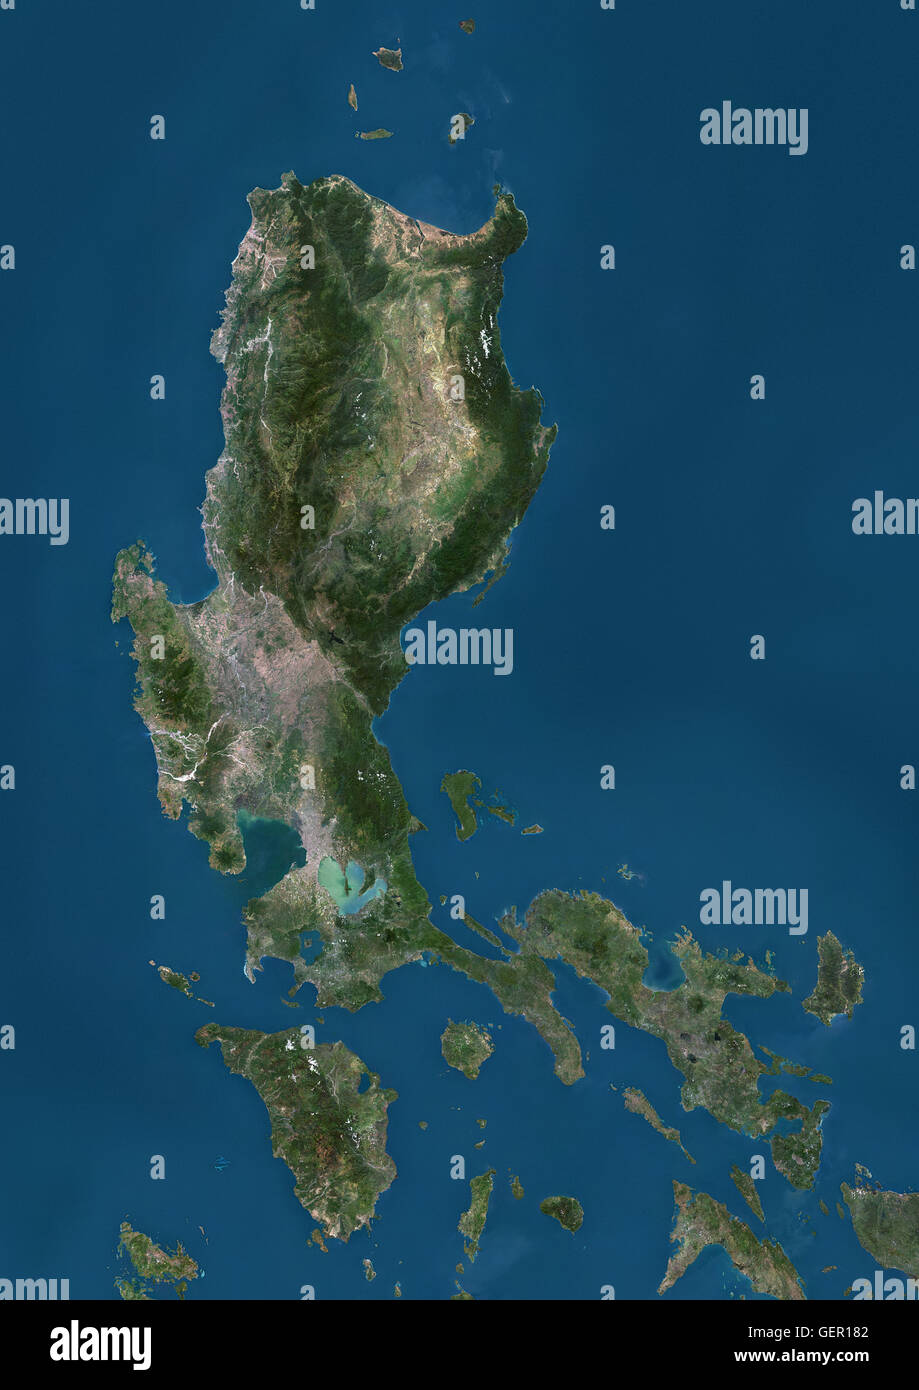 Vista satellitare di Luzon, Filippine. È la più grande e la più popolata isola nelle Filippine. Questa immagine è stata elaborata sulla base dei dati acquisiti dai satelliti Landsat. Foto Stock